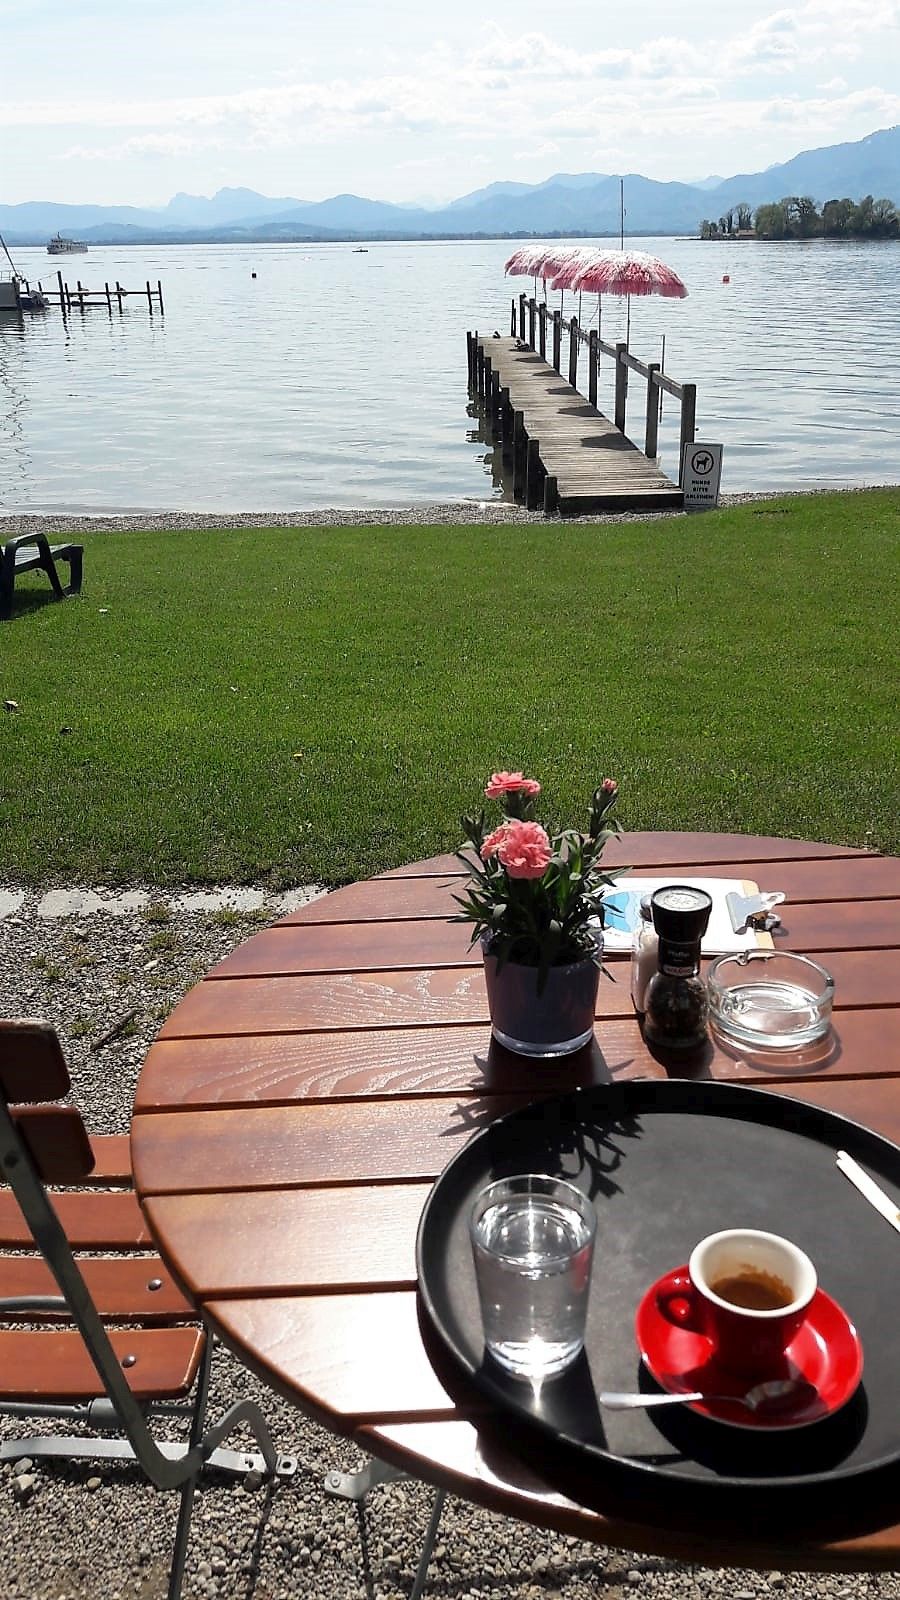 Cafè Inselblick in Gstadt am Chiemsee, Runder Tisch im Vordergrund mit Getränken darauf, dahinter Blick zum See mit Steeg und Bergkulisse